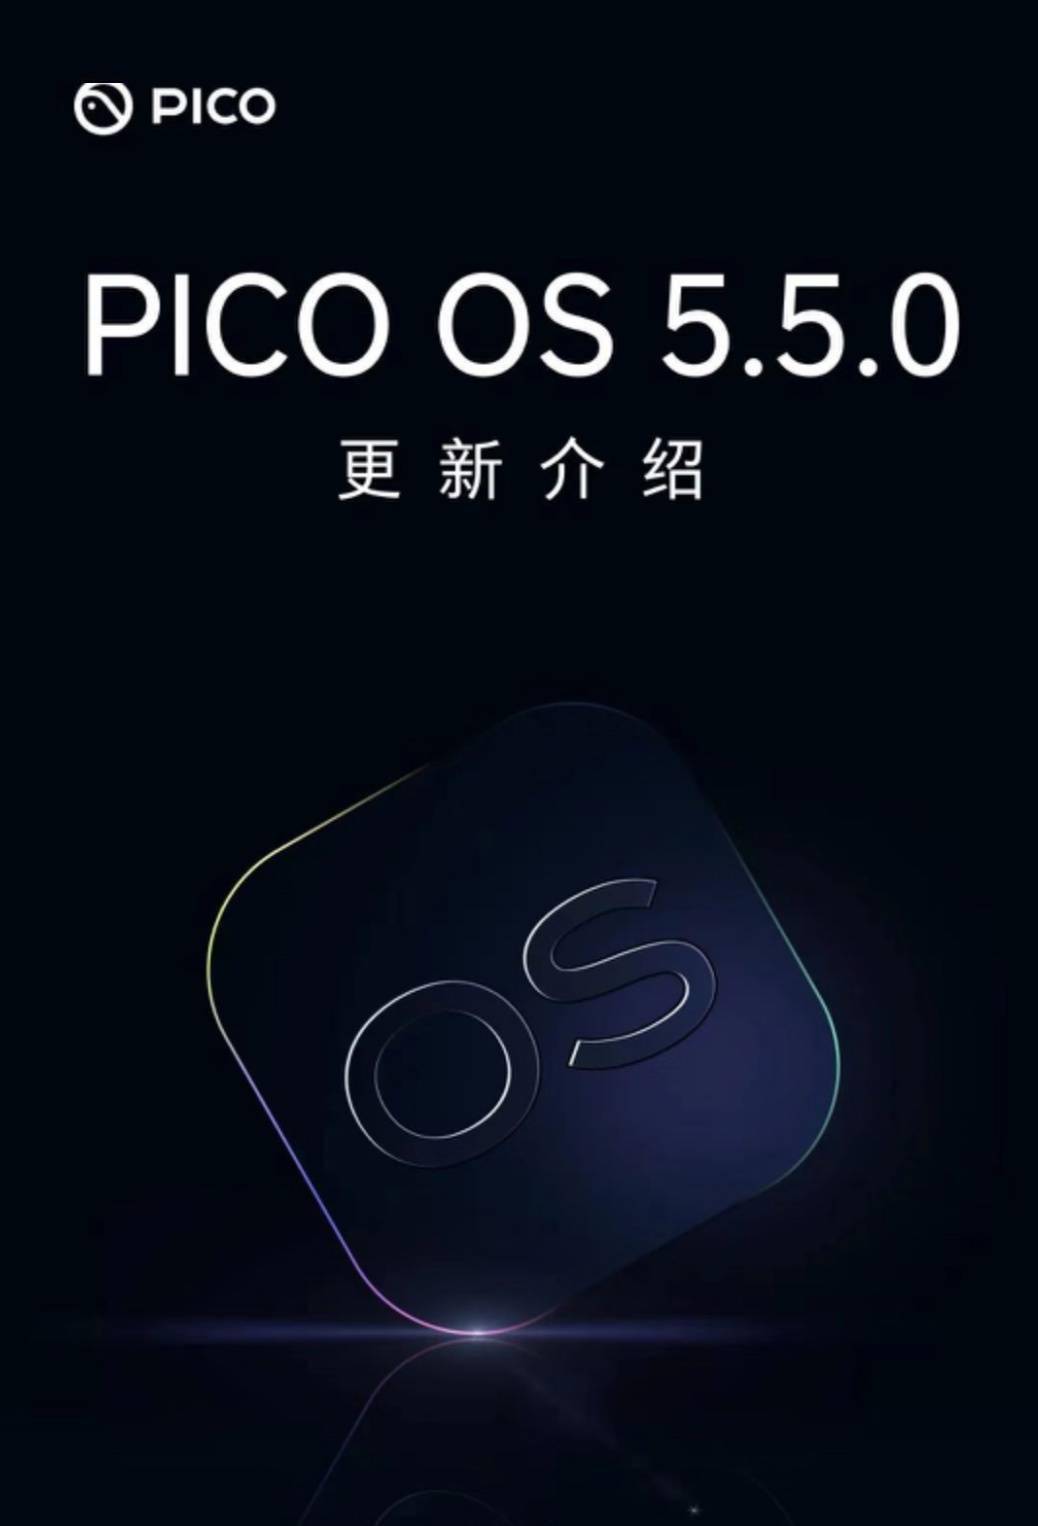 PICO OS 5.5.0发布 新增手机远程投屏指引、手机消息接入VR等